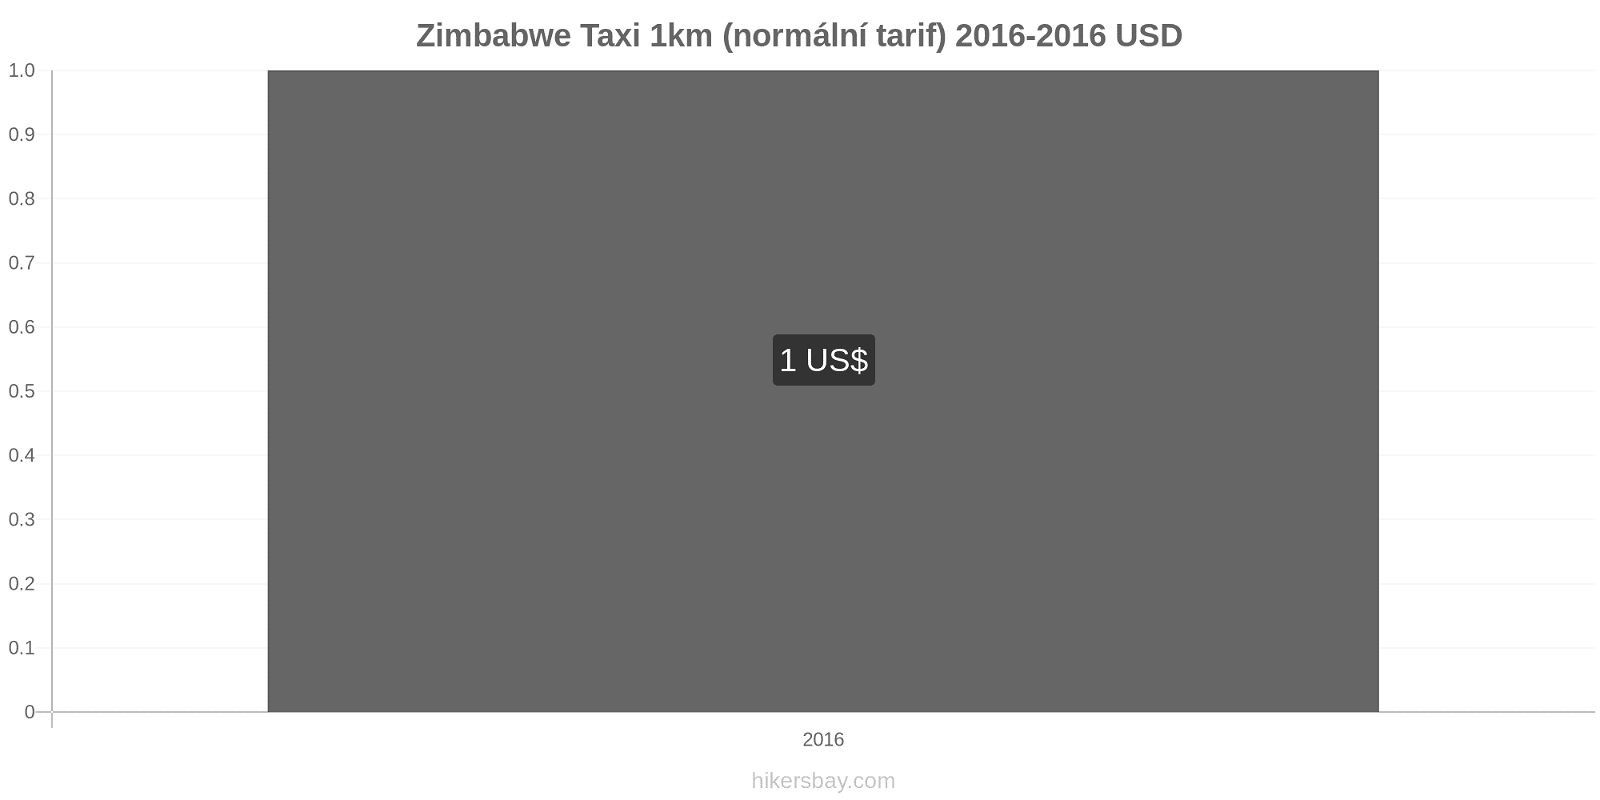 Zimbabwe změny cen Taxi 1km (normální tarif) hikersbay.com